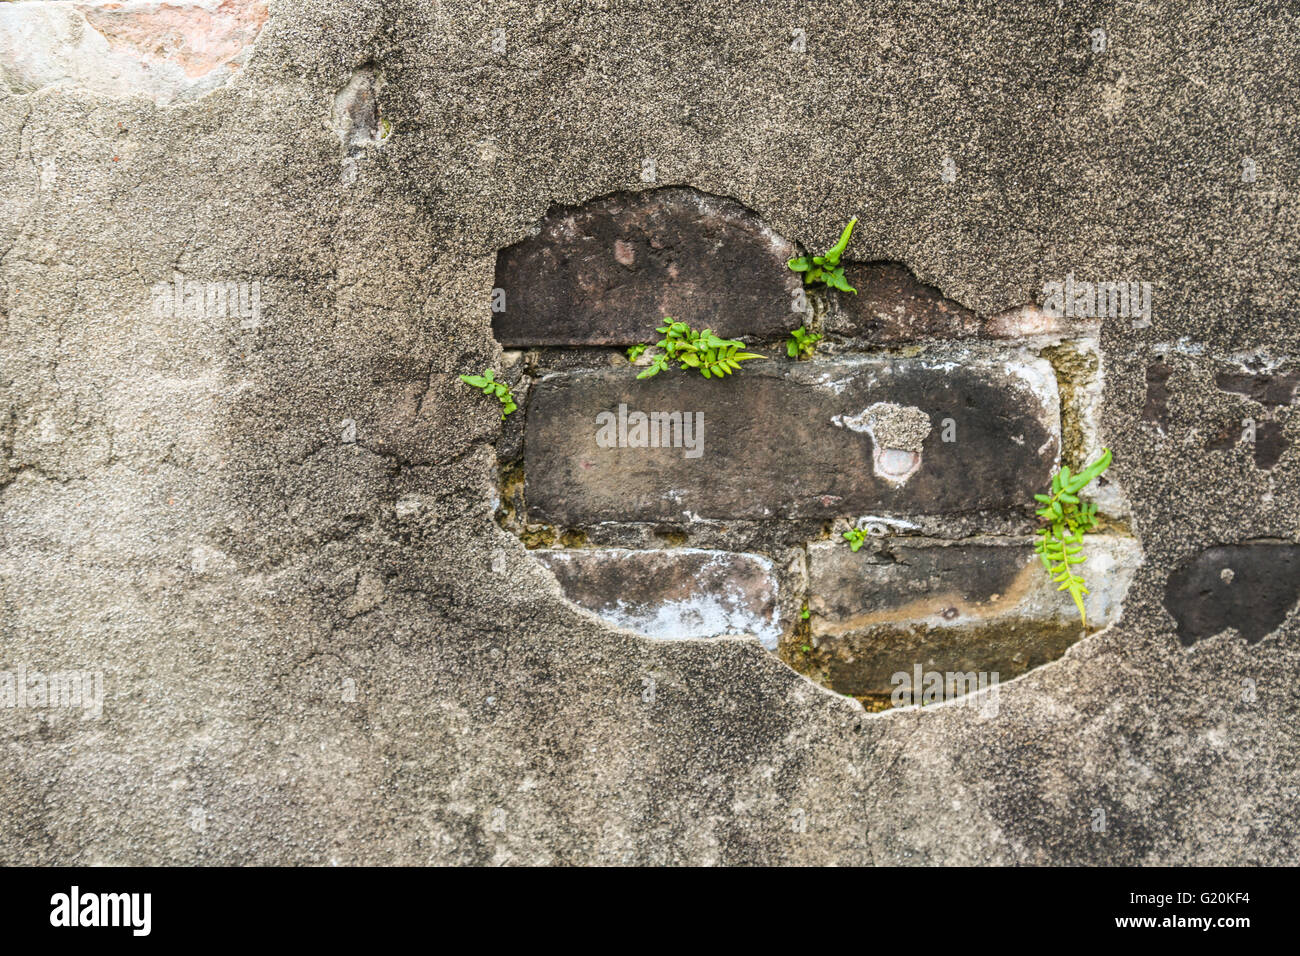 Détail de plusieurs fougères poussant dans les lacunes dans le mortier au mur dans la Nouvelle-Orléans Banque D'Images